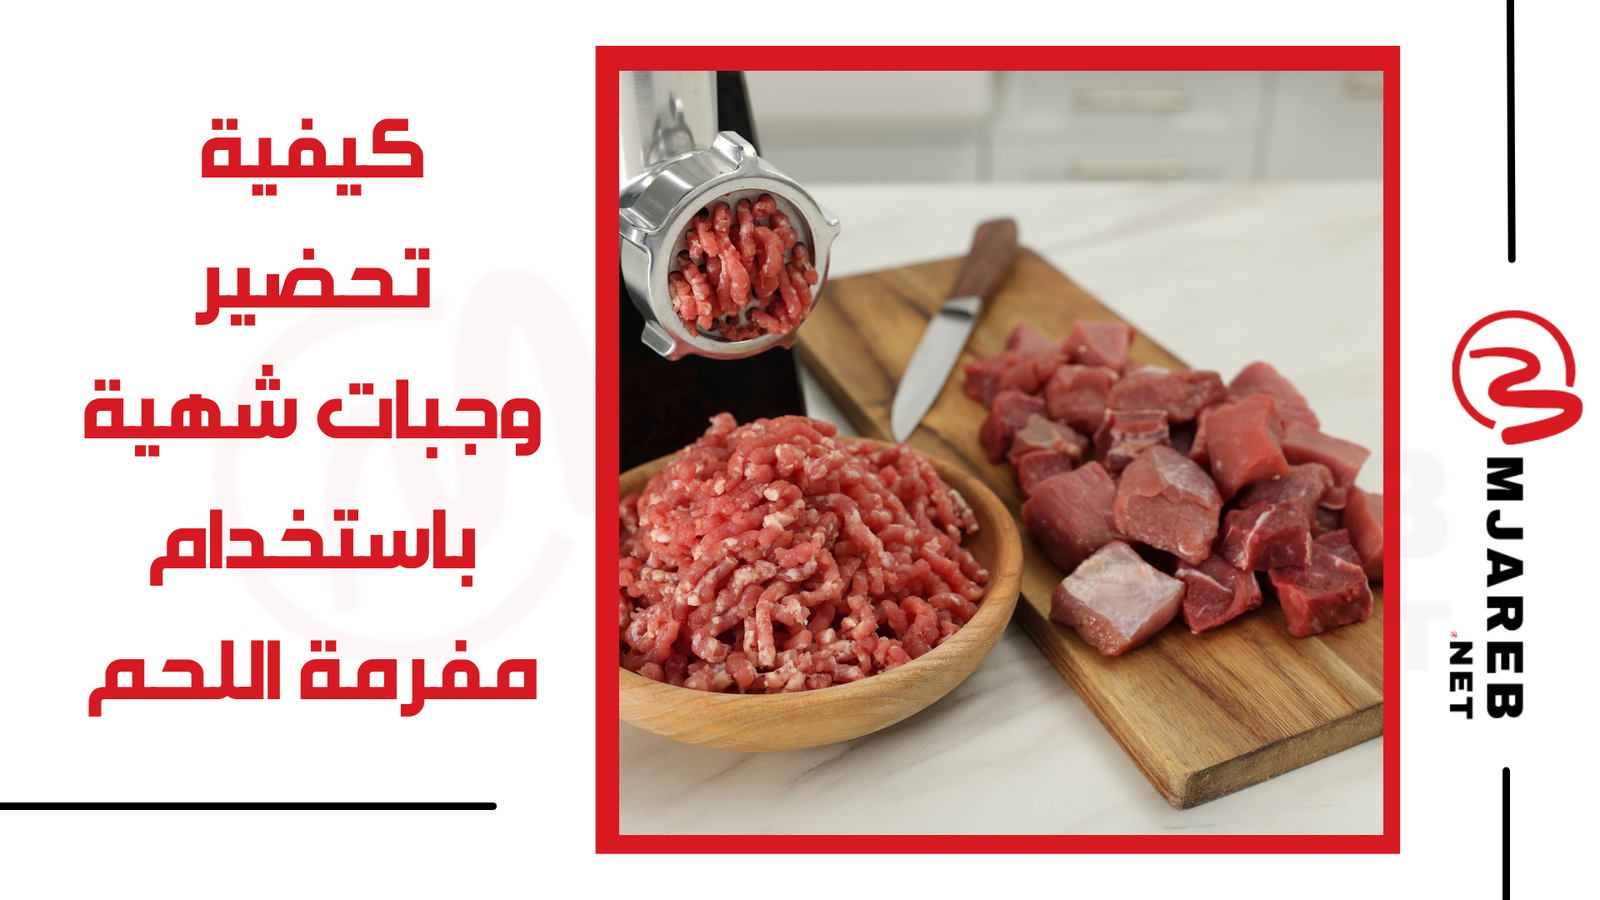 كيفية تحضير وجبات شهية باستخدام مفرمة اللحم